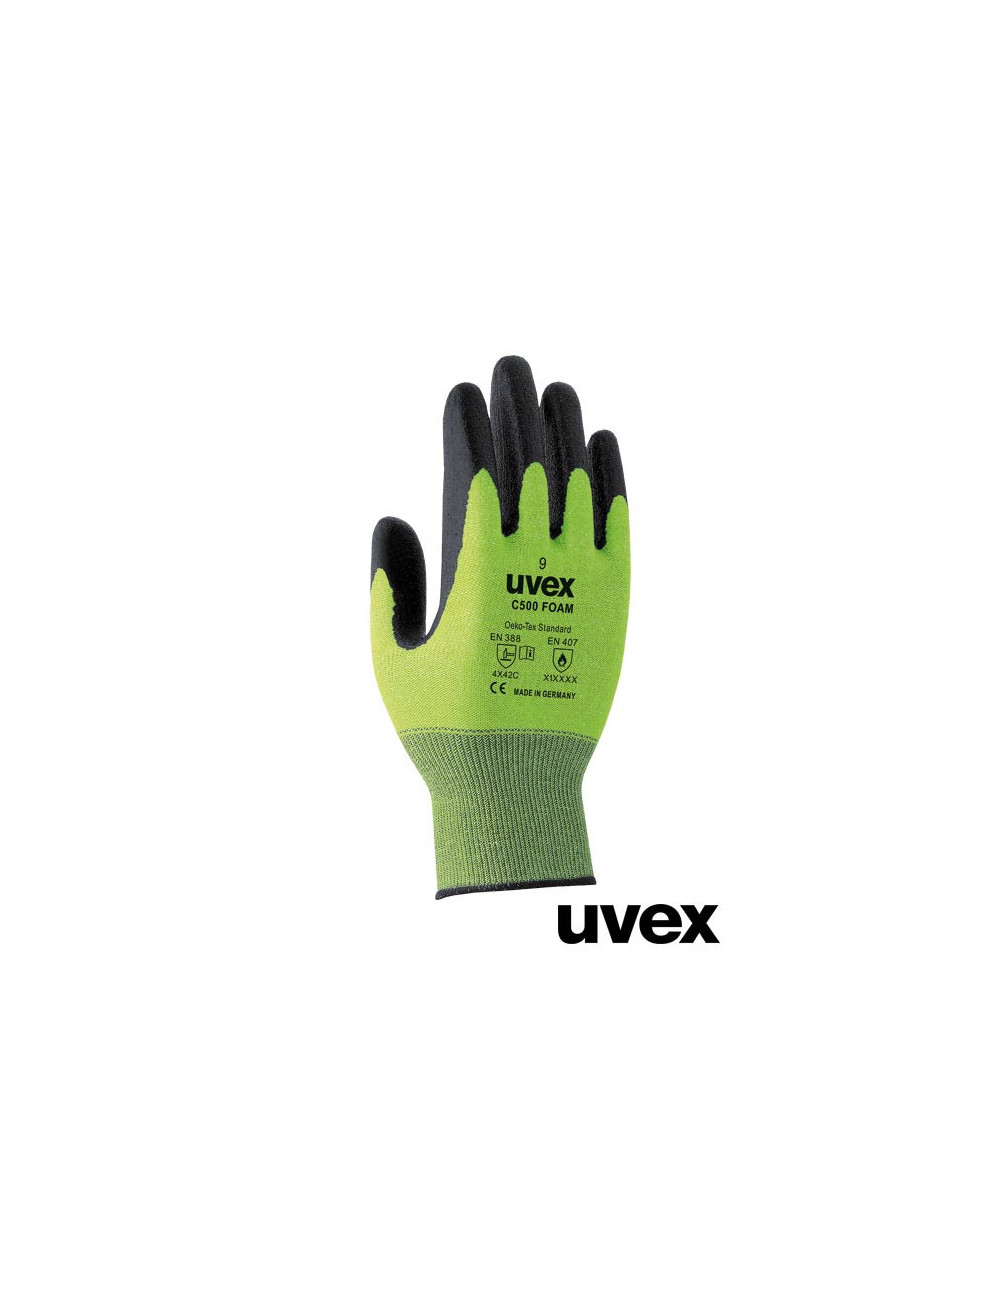 Schutzhandschuhe zb grün und schwarz Uvex Ruvex-c500foam